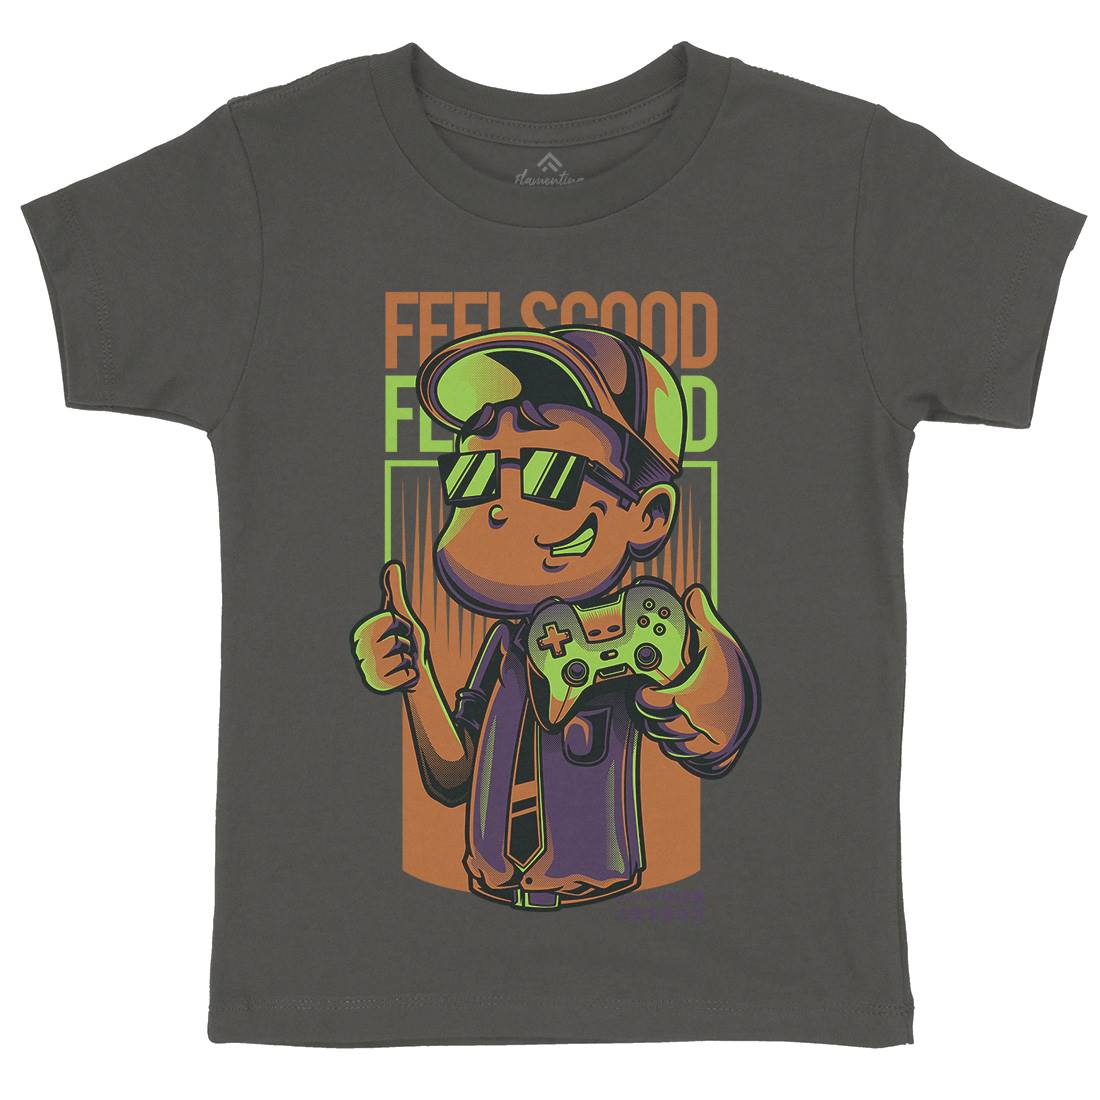 Feels Good Kids Organic Crew Neck T-Shirt Geek D773